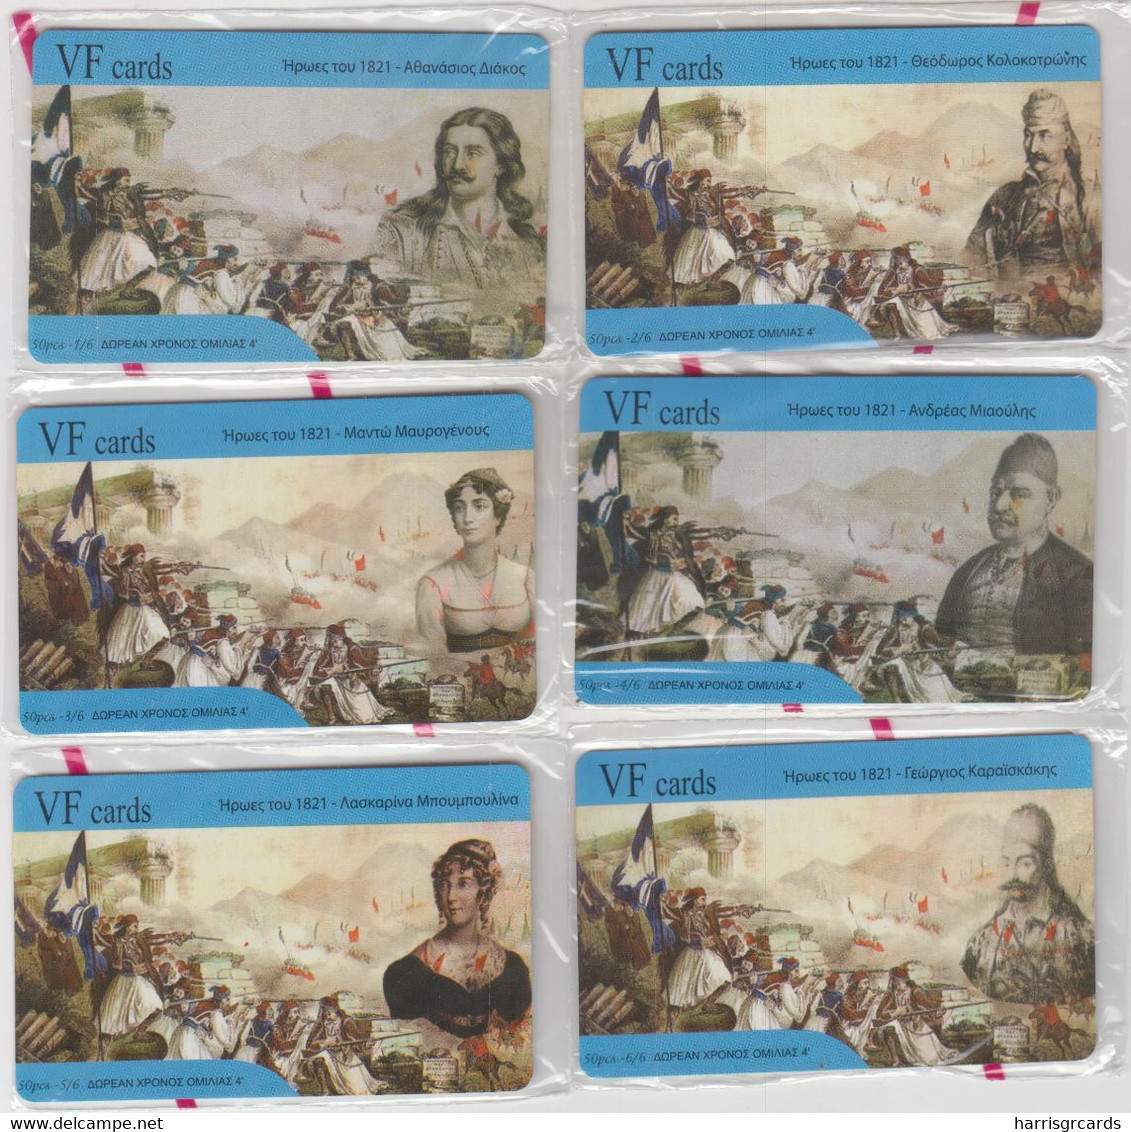 GREECE - Greek Revolution Of 1821,Set 6 VF Promotion Prepaid Cards(Sample),tirage 450,exp.date 30/09/10,mint - Grèce